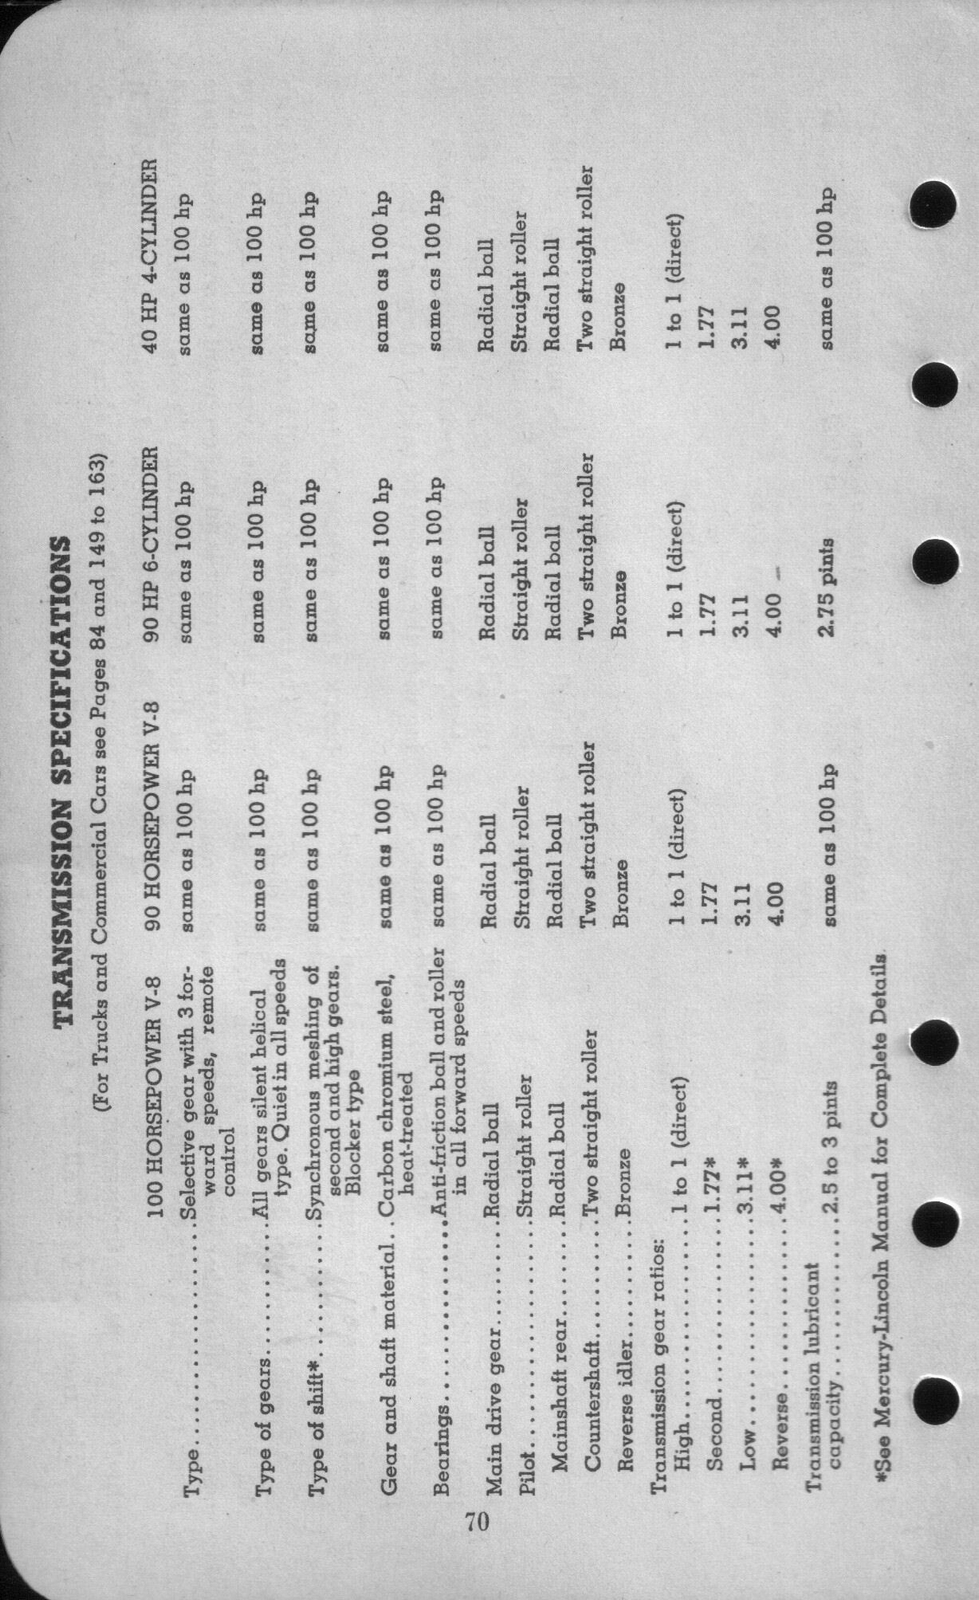 n_1942 Ford Salesmans Reference Manual-070.jpg